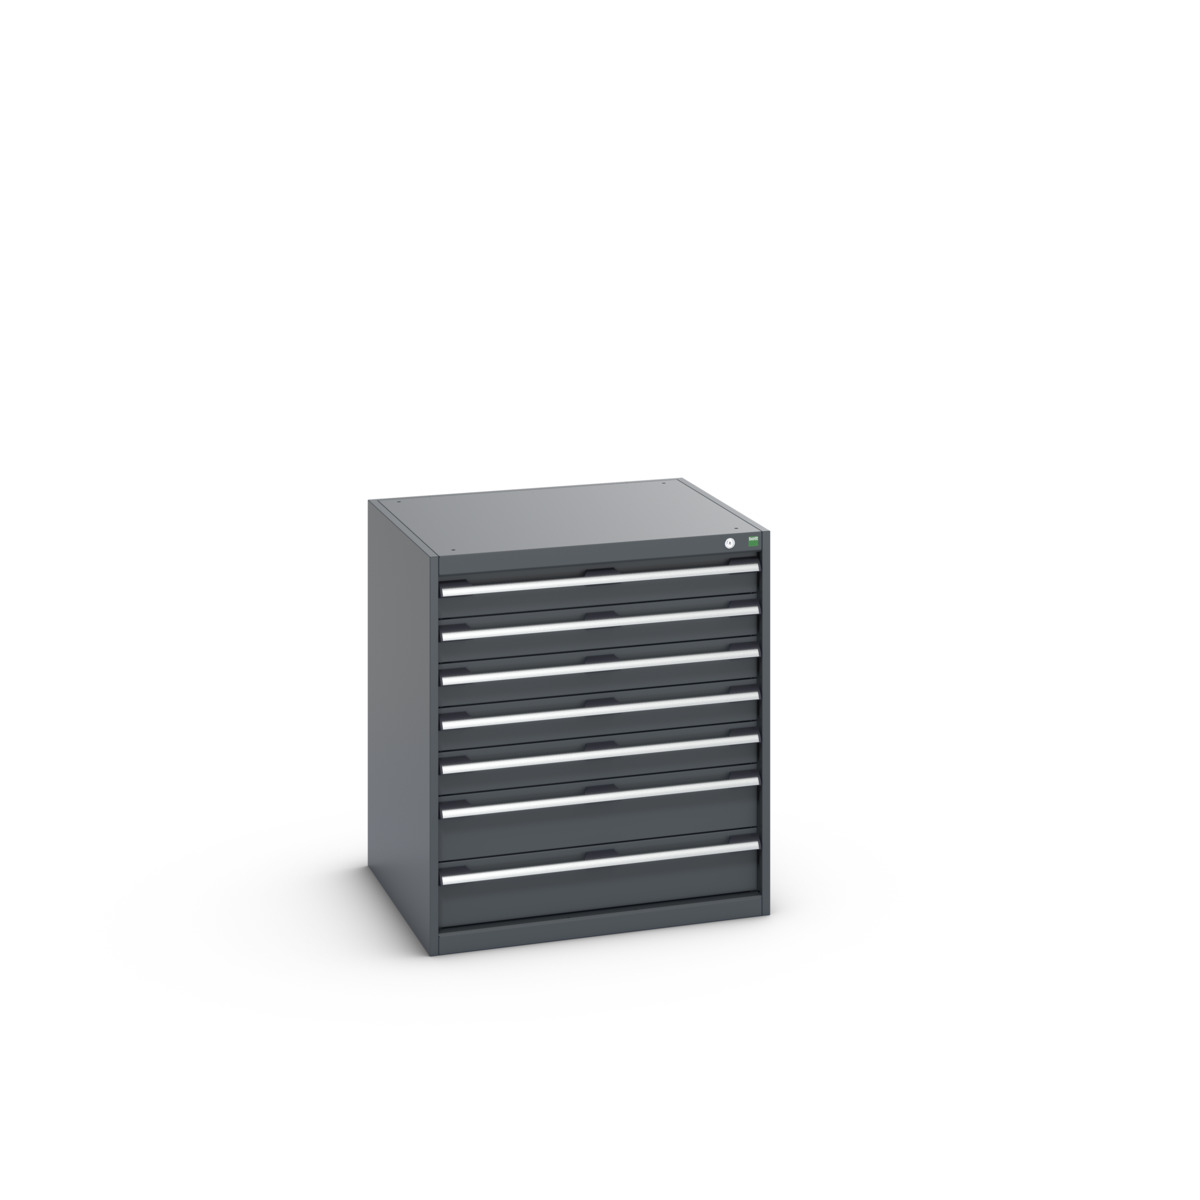 40028109.77V - cubio drawer cabinet